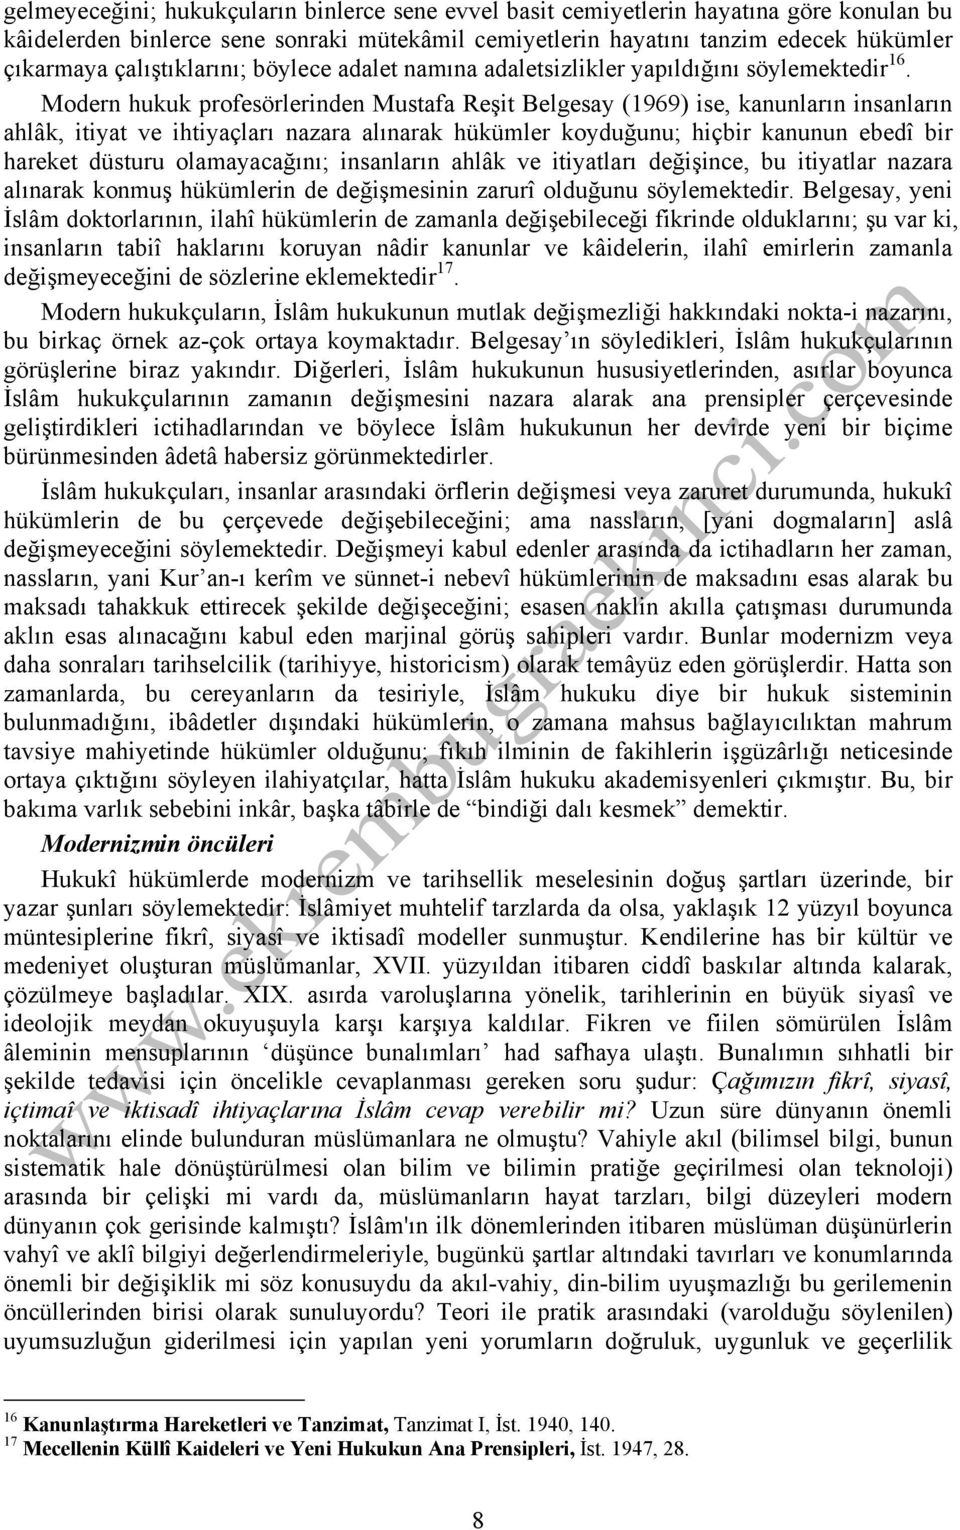 Modern hukuk profesörlerinden Mustafa Reşit Belgesay (1969) ise, kanunların insanların ahlâk, itiyat ve ihtiyaçları nazara alınarak hükümler koyduğunu; hiçbir kanunun ebedî bir hareket düsturu